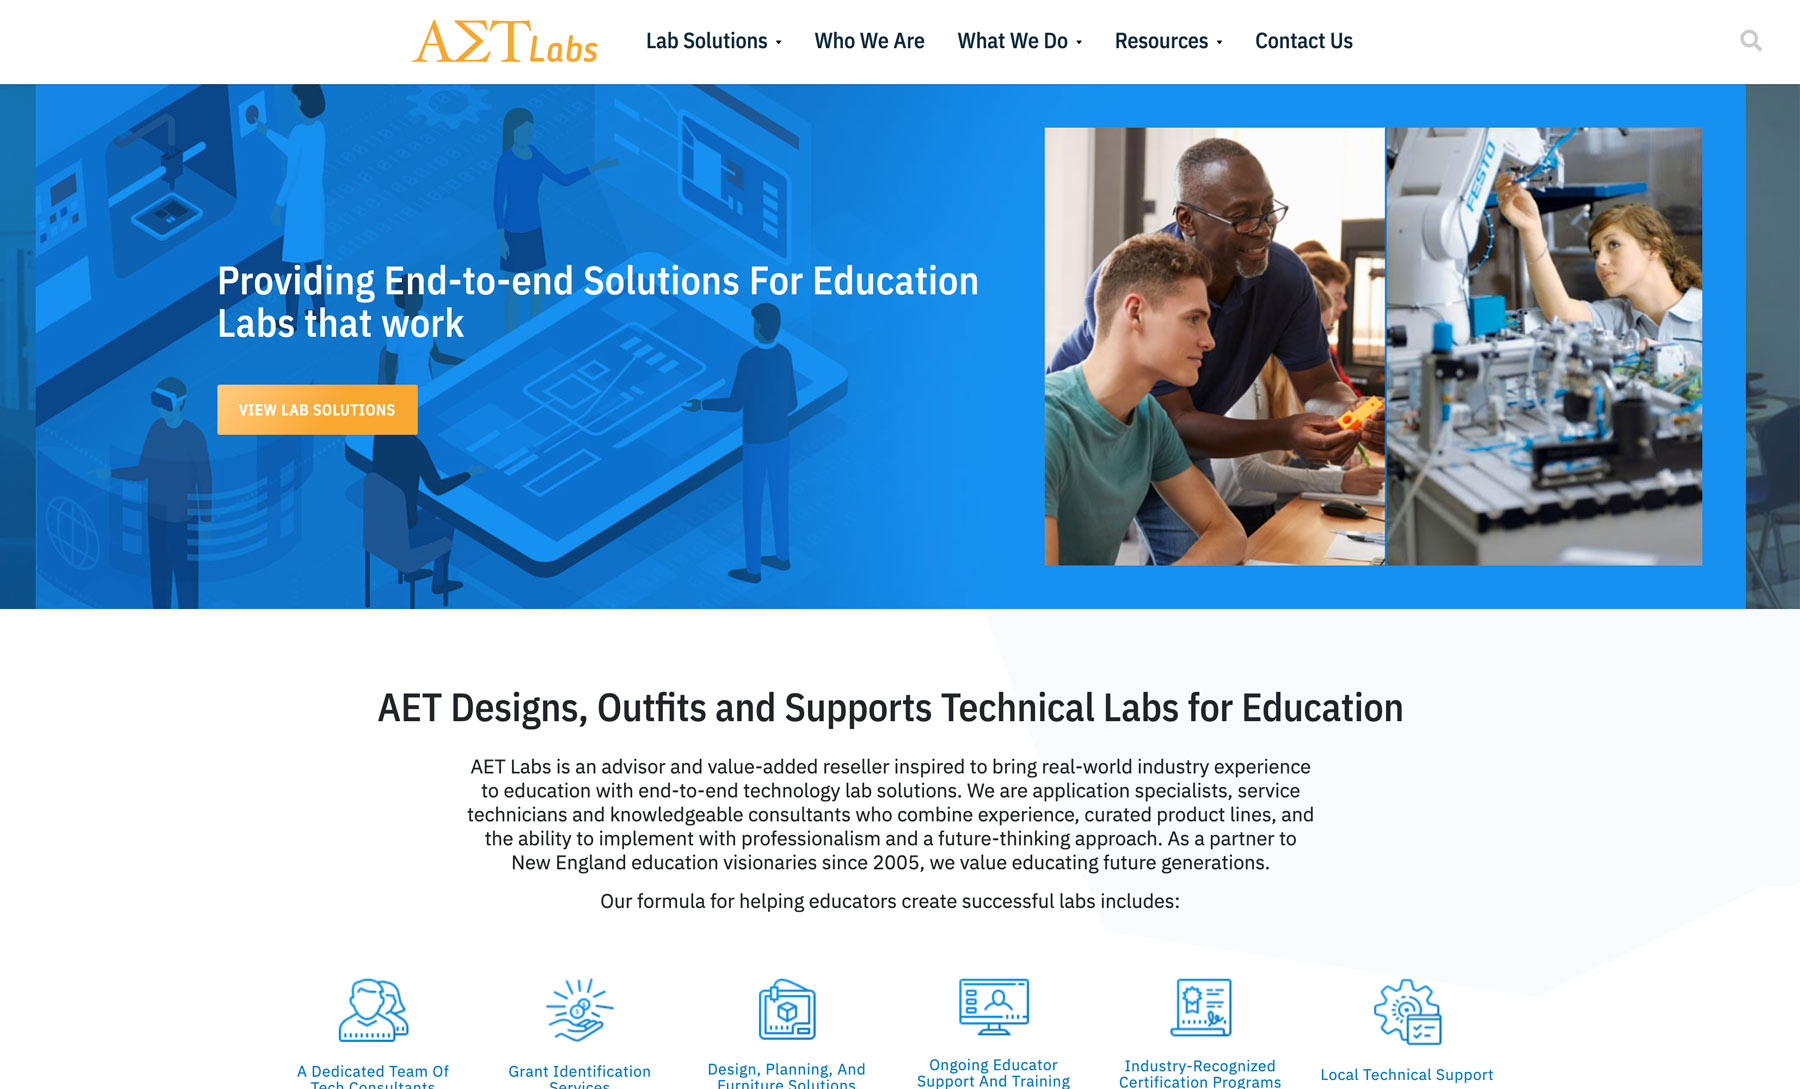 AET Labs